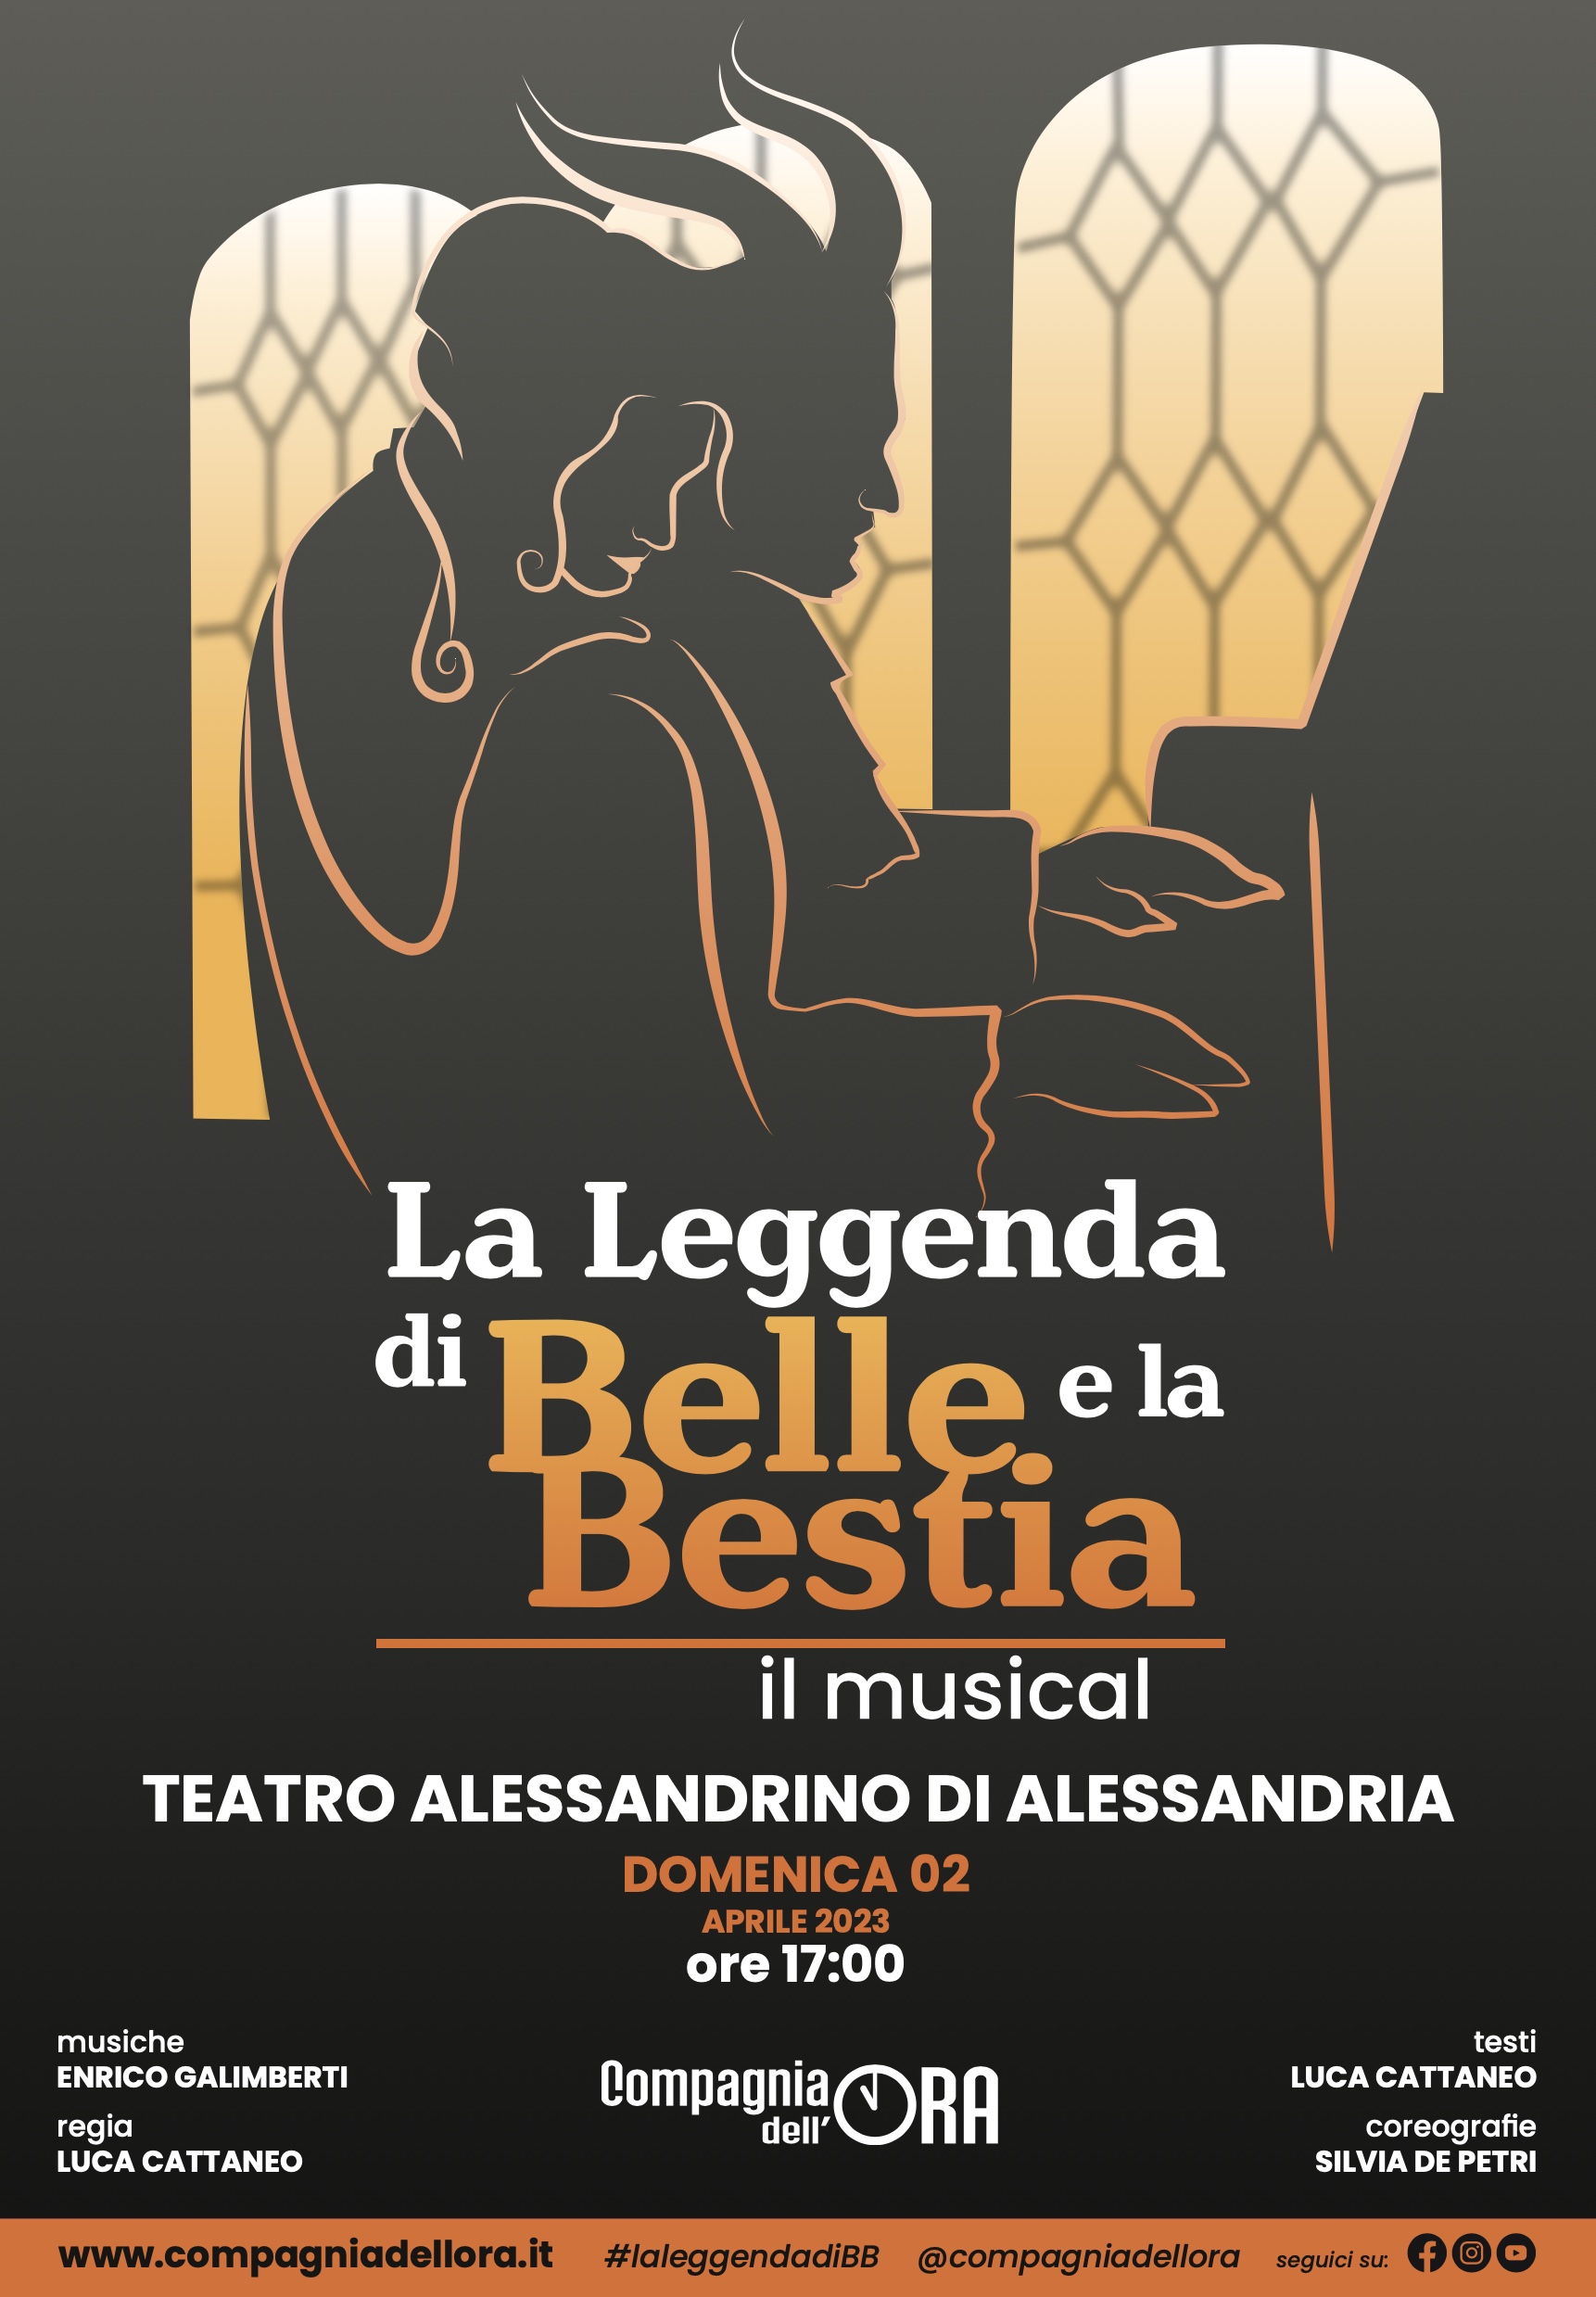 La Leggenda di Belle e la Bestia – IL MUSICAL 2 APRILE 2023 - domenica ore 17.00